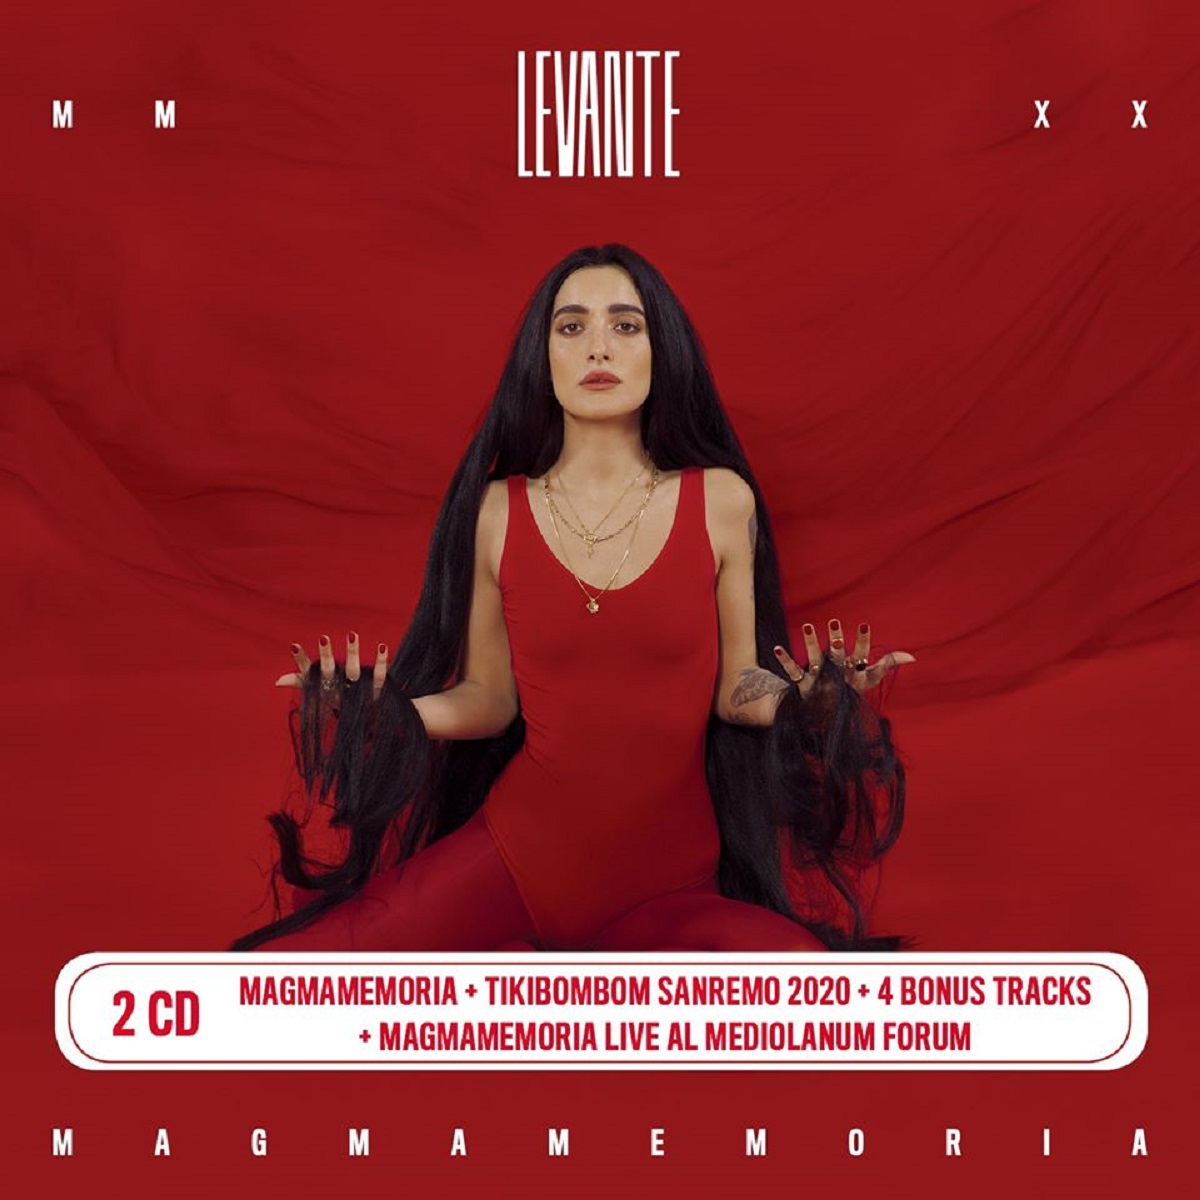 Levante Magnamemoria MMXX album 2020 copertina